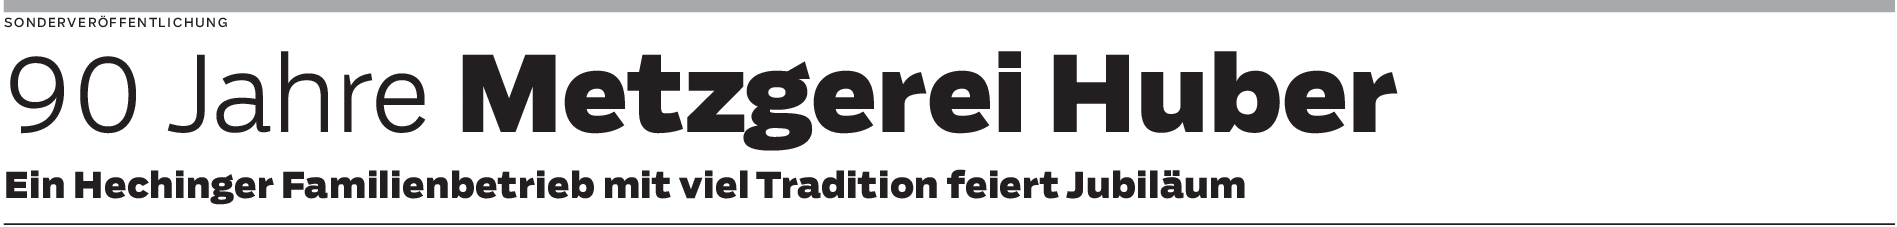 90 Jahre Metzgerei Huber in Hechingen